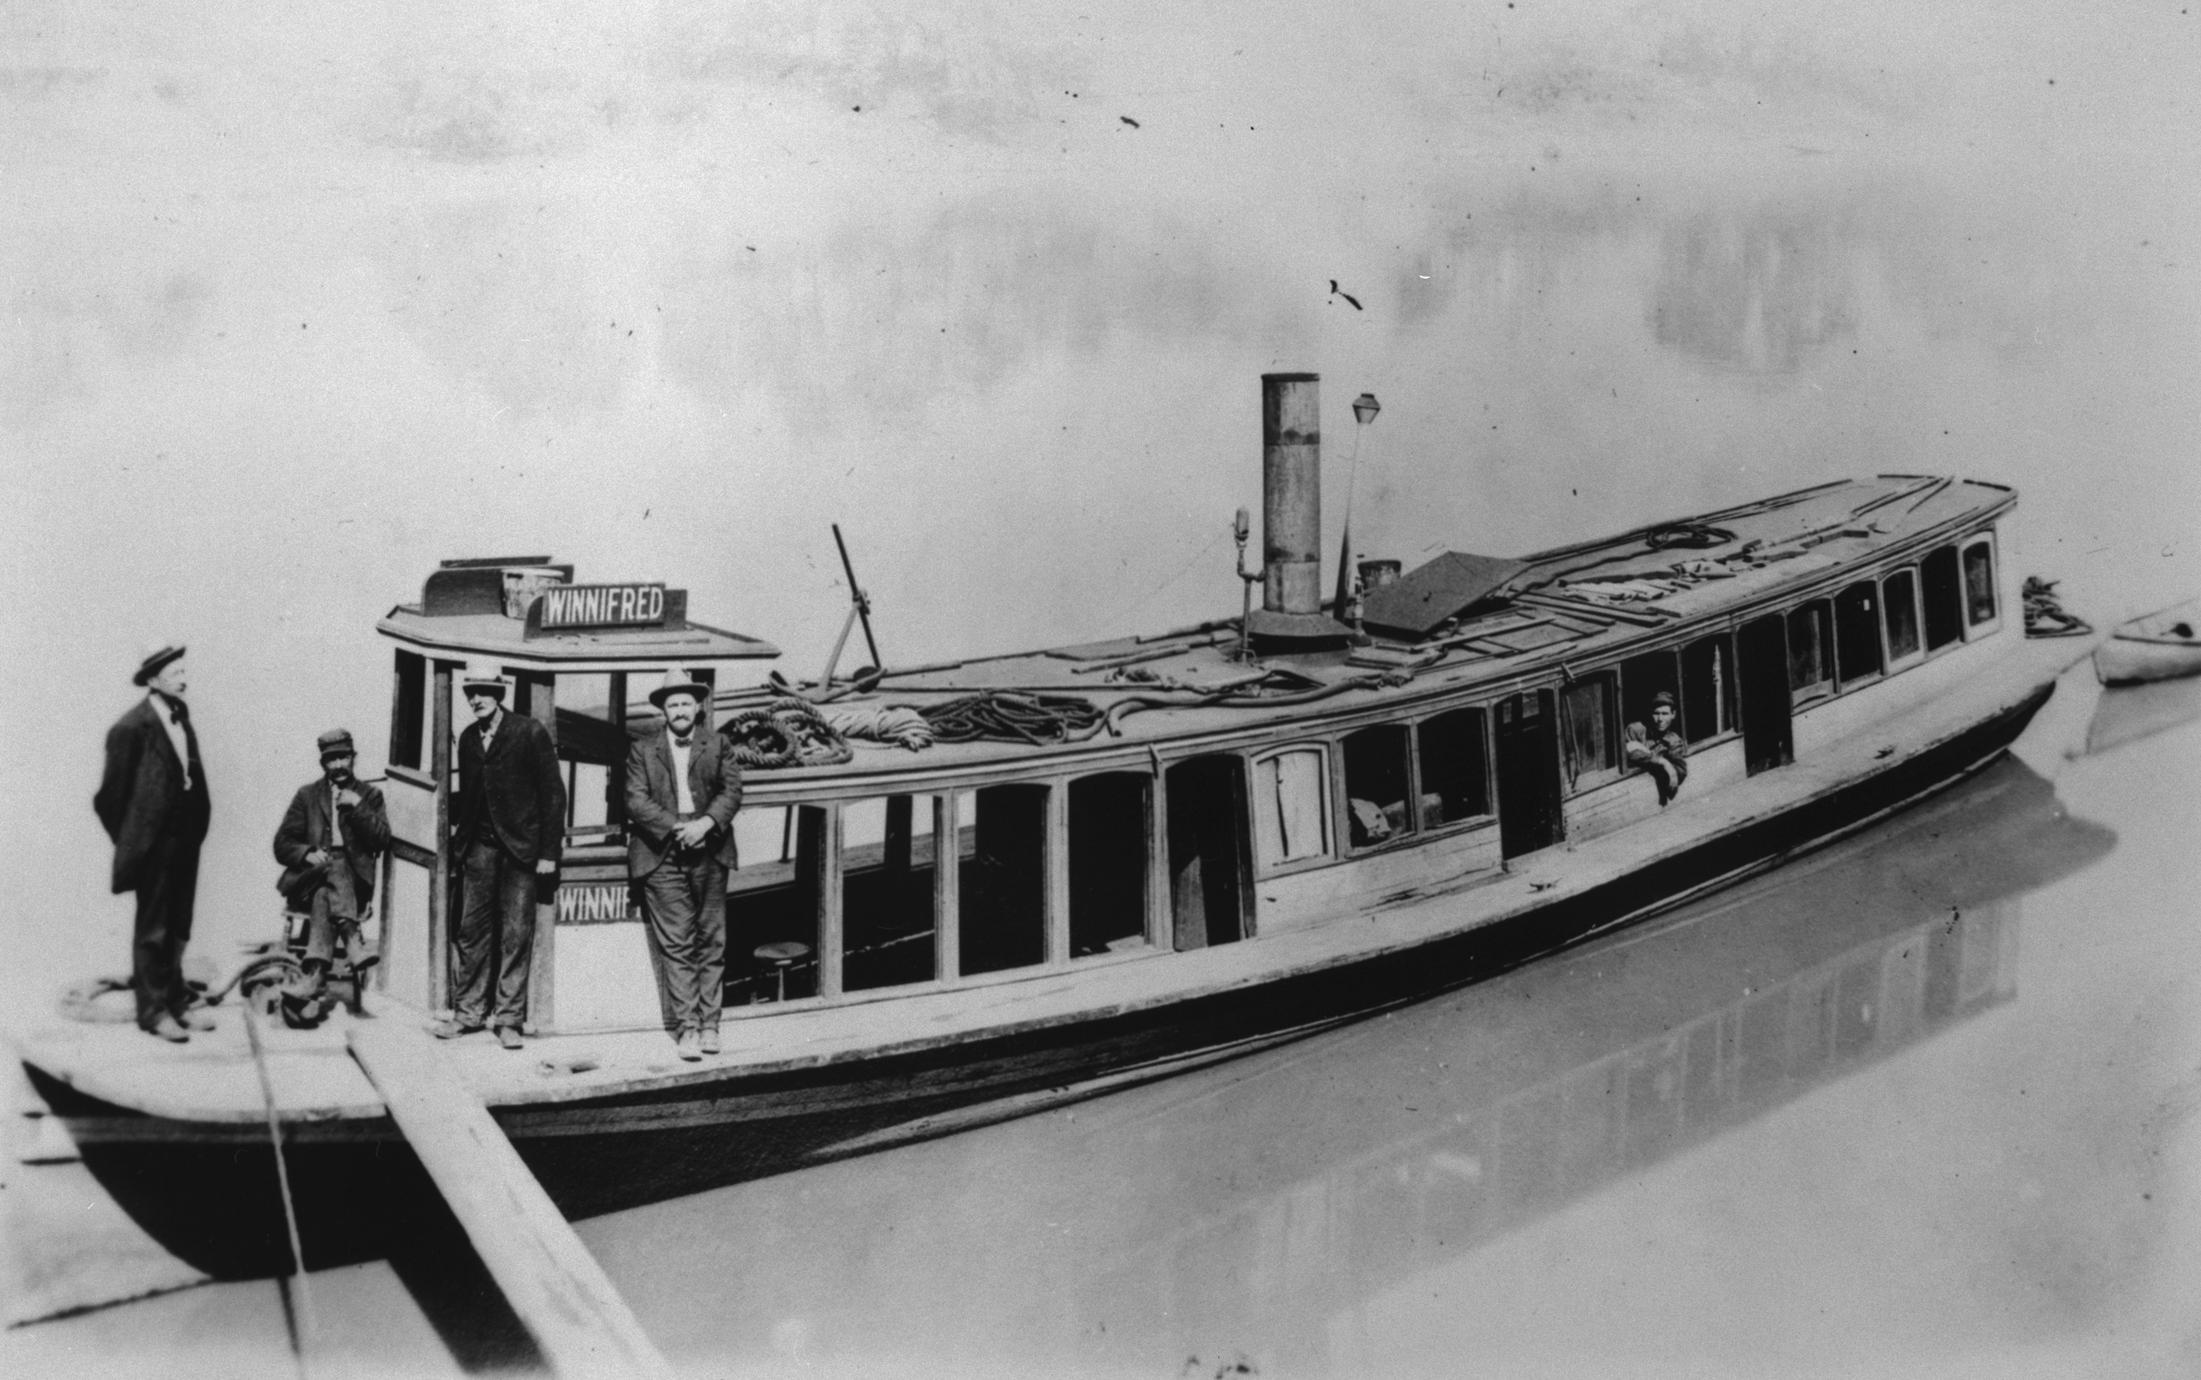 Winnifred (Yacht, 1892-1907)